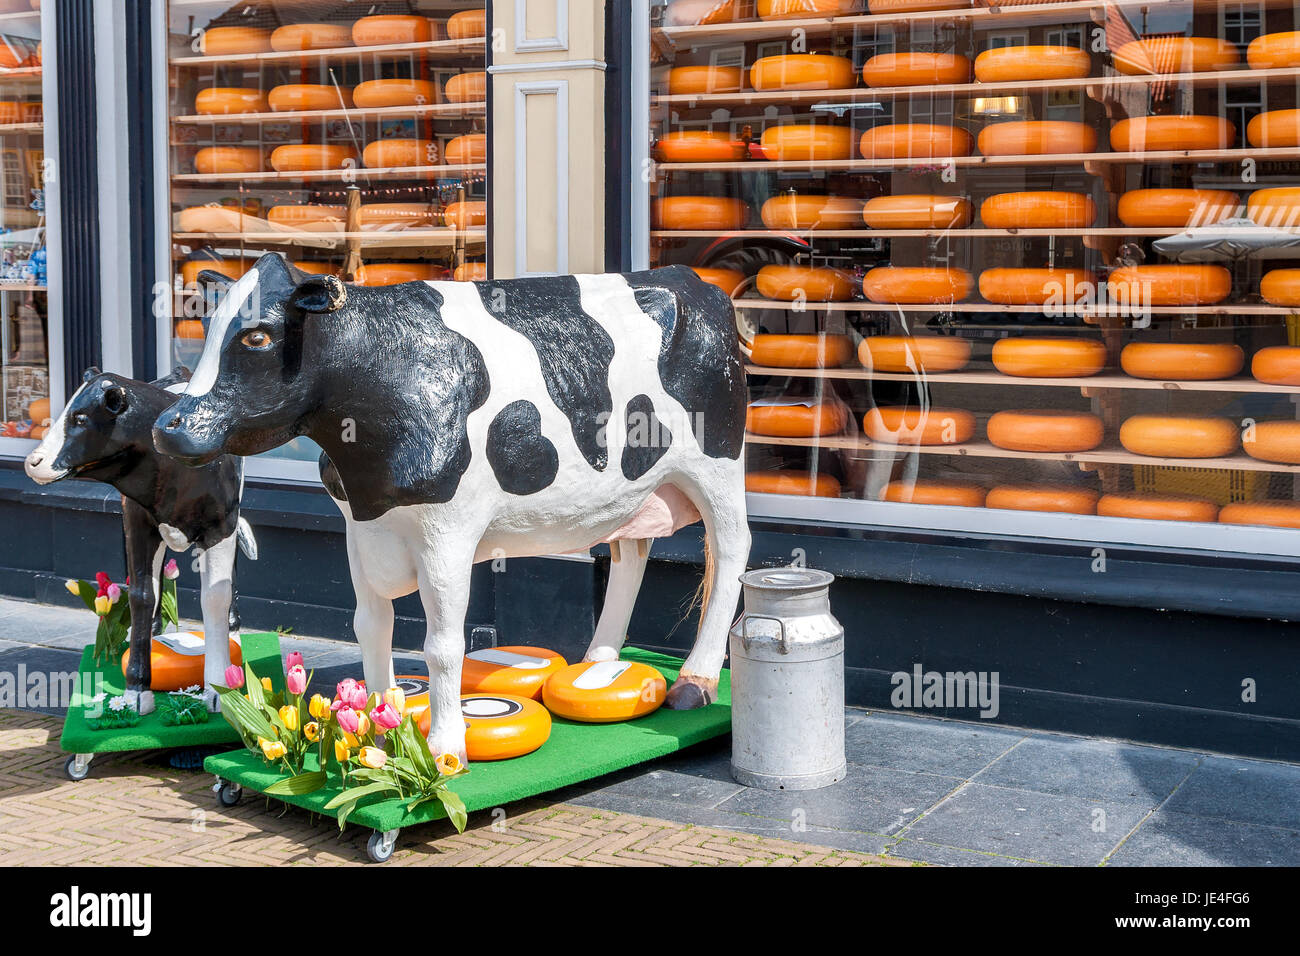 Schaufenster eines Käsegeschäftes in Holland mit zwei Kuhfiguren davor als Dekoration, Milchkanne und Käselaibern Stock Photo